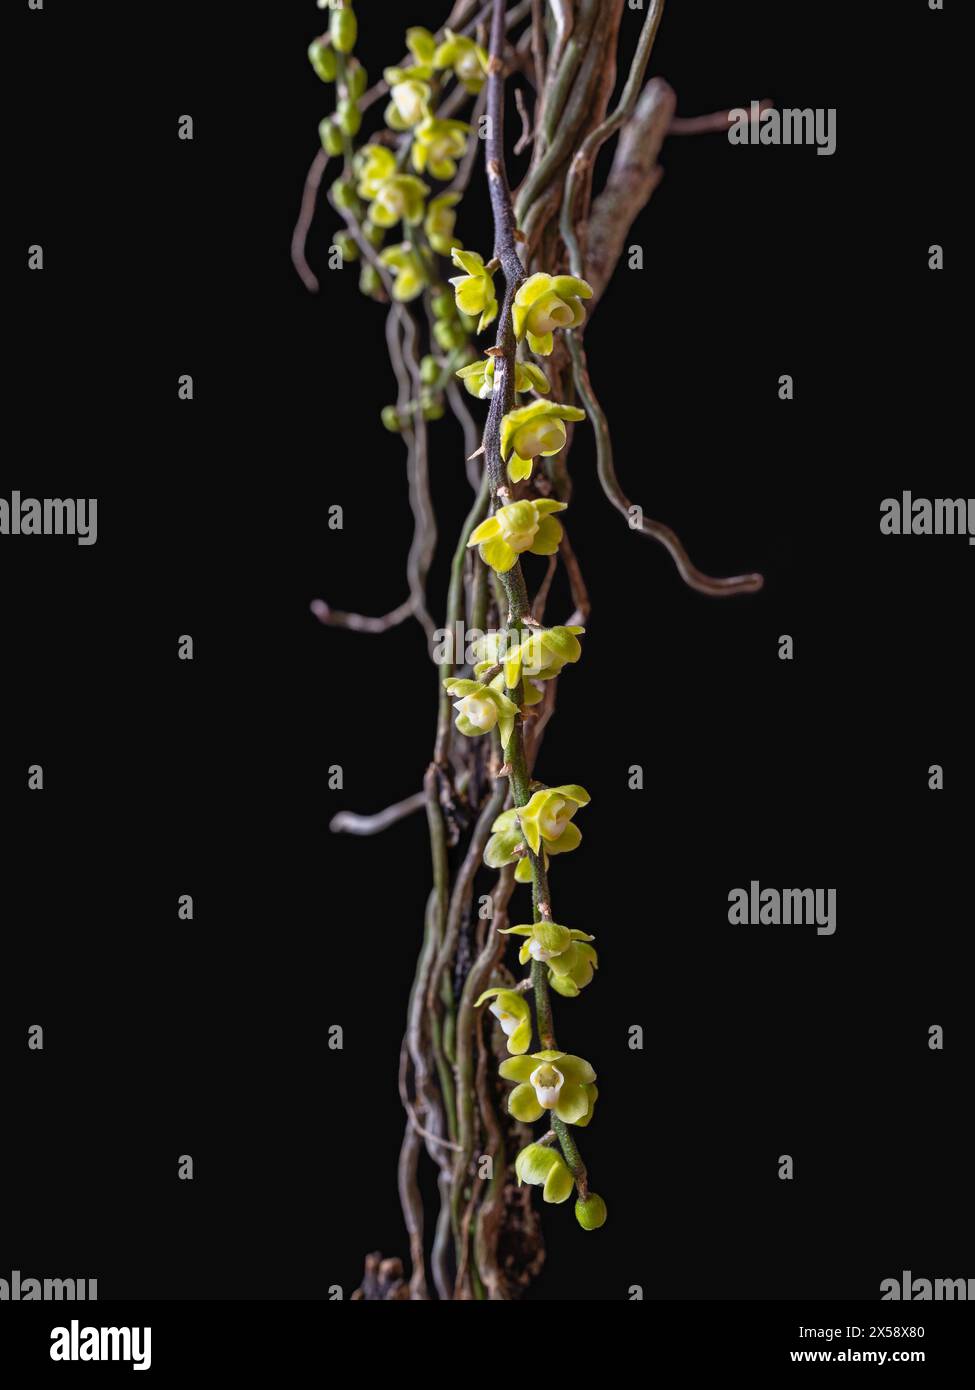 Vue rapprochée d'espèces d'orchidées épiphytes chiloschista viridiflava sans feuilles avec de minuscules fleurs jaunes et blanches isolées sur fond noir Banque D'Images